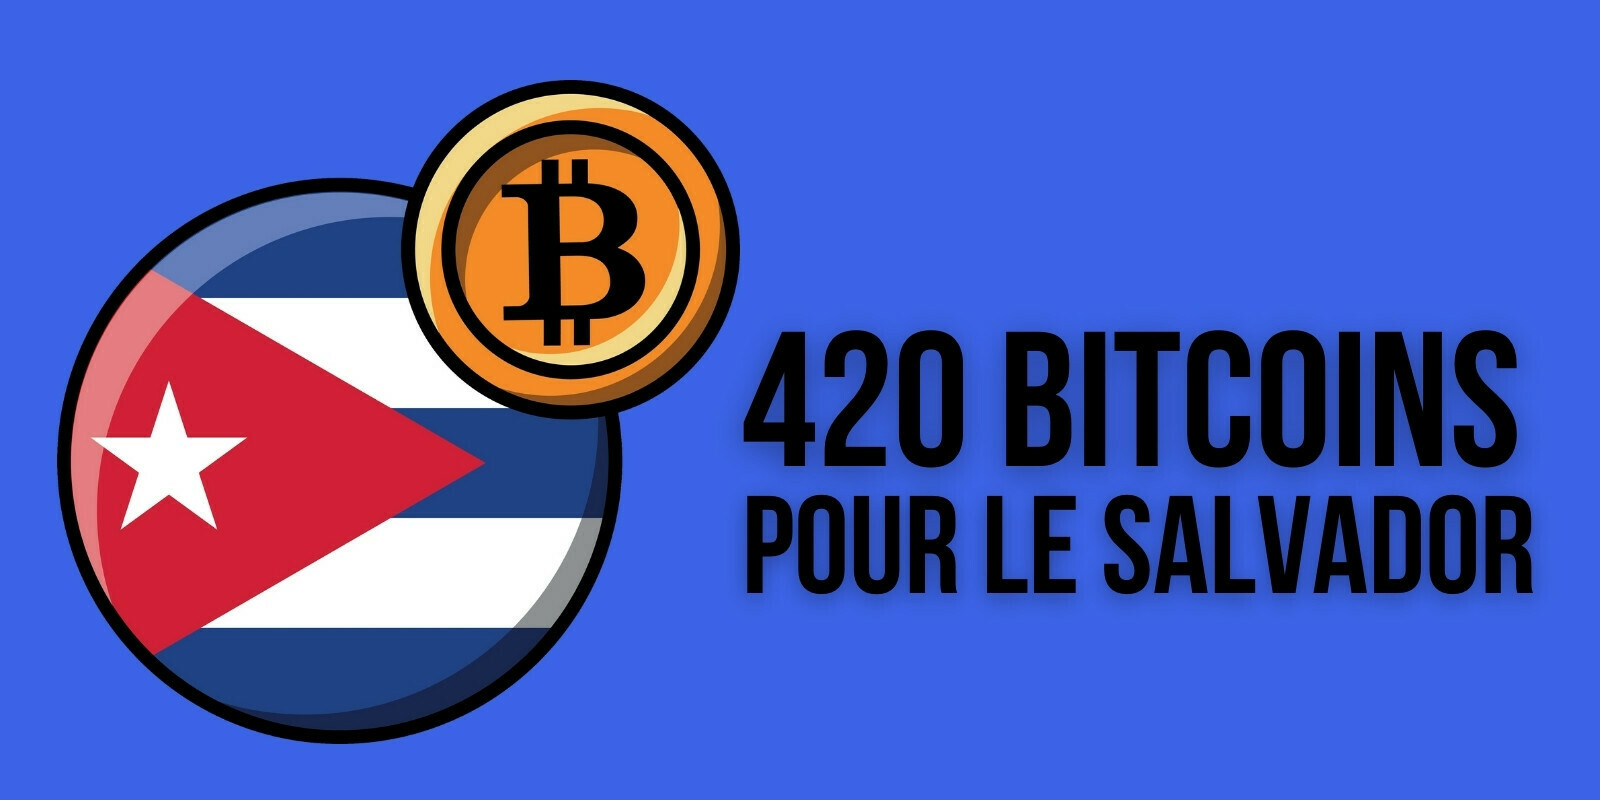 Le Salvador profite de la chute pour se réapprovisionner avec un achat de 420 bitcoins (BTC)